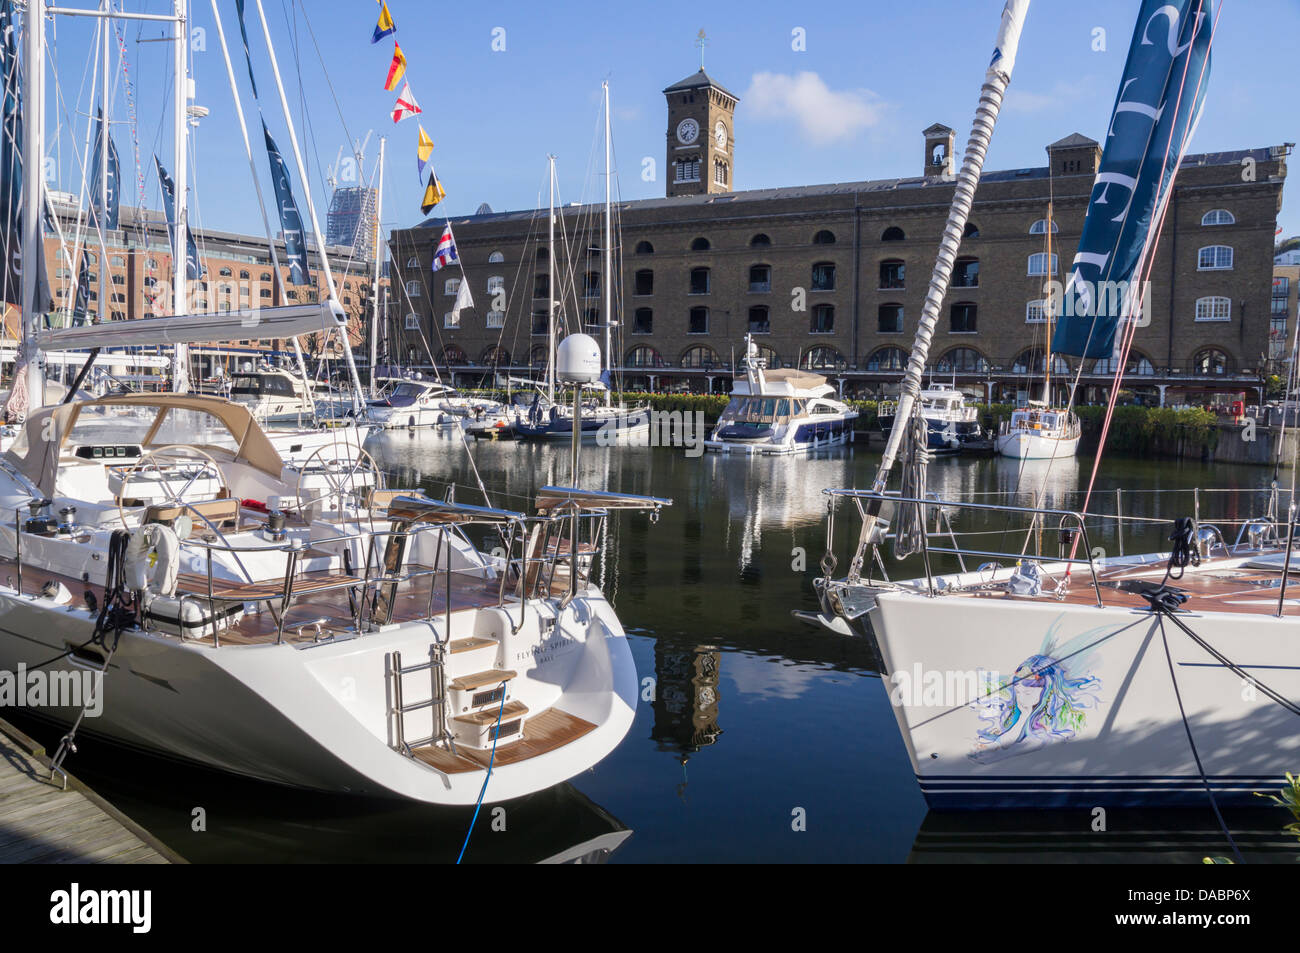 Bateau bateaux amarrés à St Katherine's Dock, Londres, Angleterre, Royaume-Uni, Europe Banque D'Images